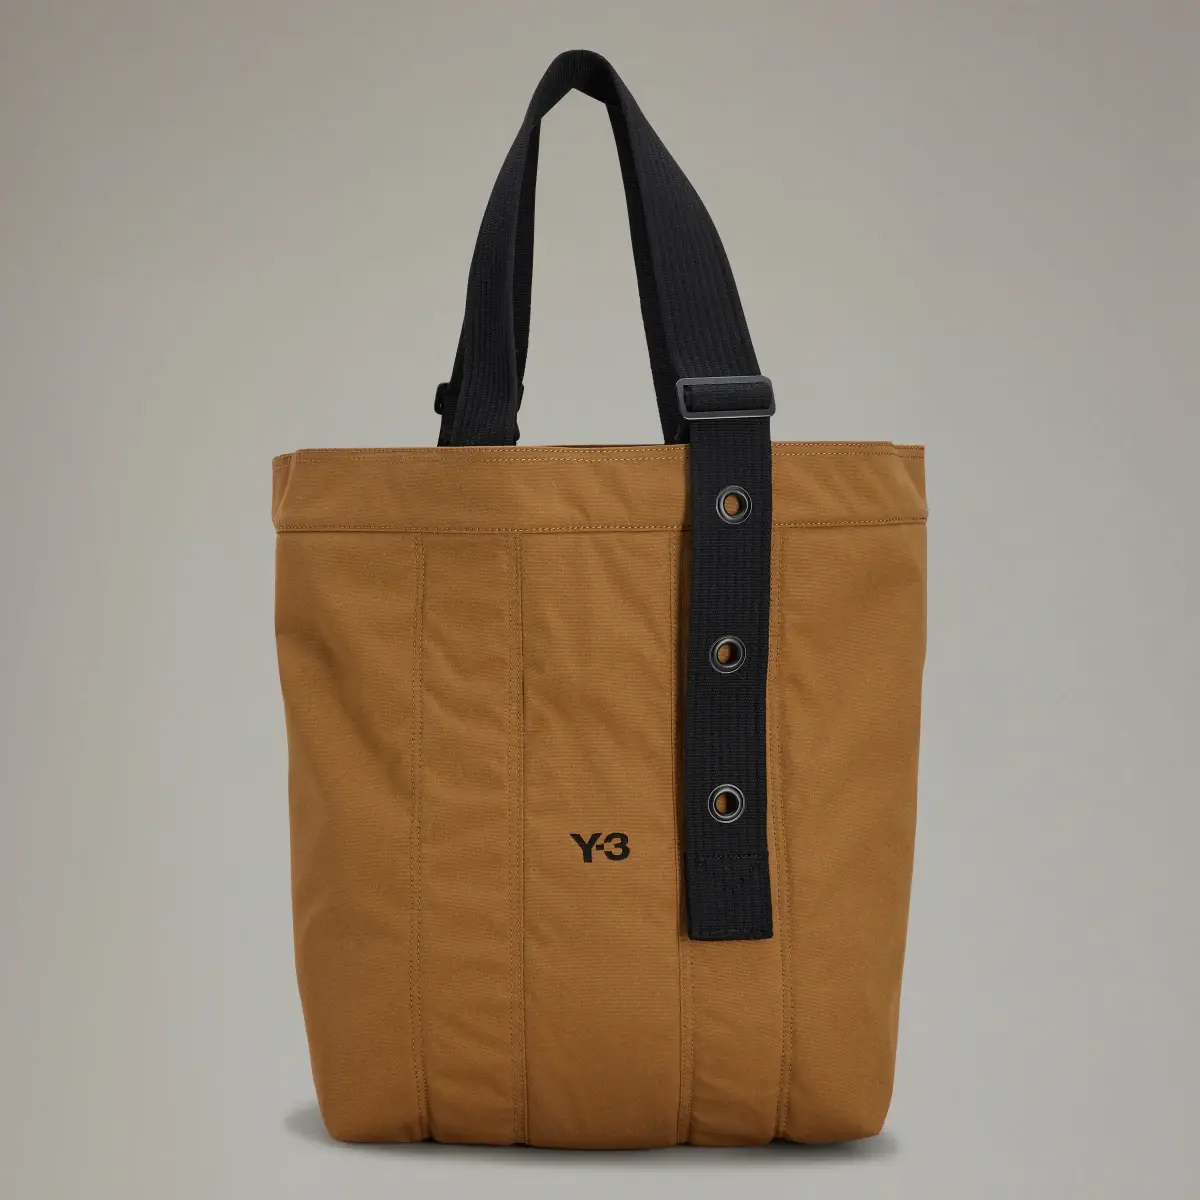 Adidas Y-3 Tote Bag. 1